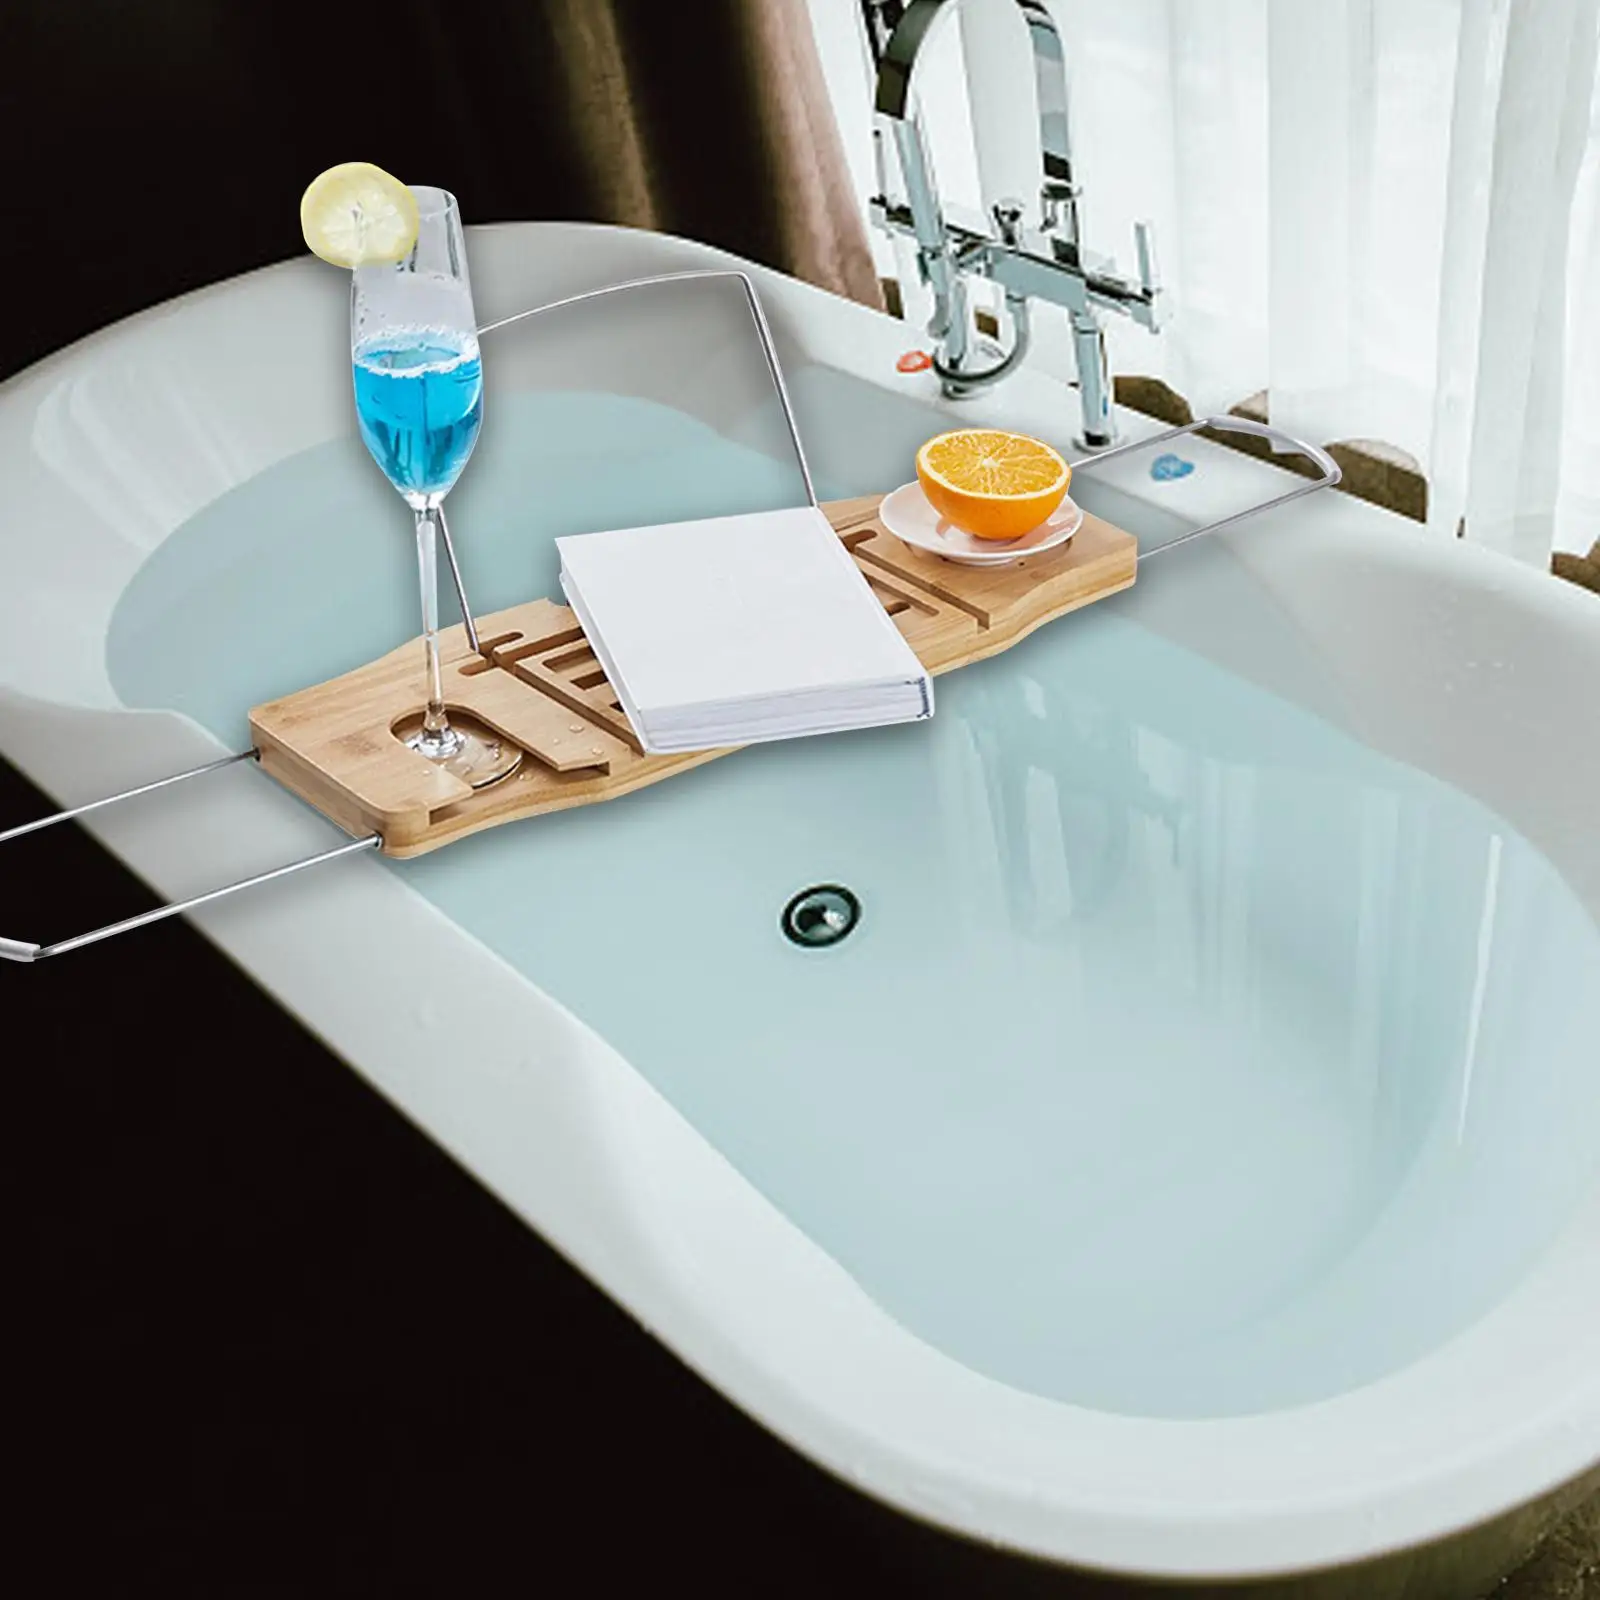 Expandable Bath Tub Caddy Luxury Bathtub Accessories Shelf Organizer for Tubs Home